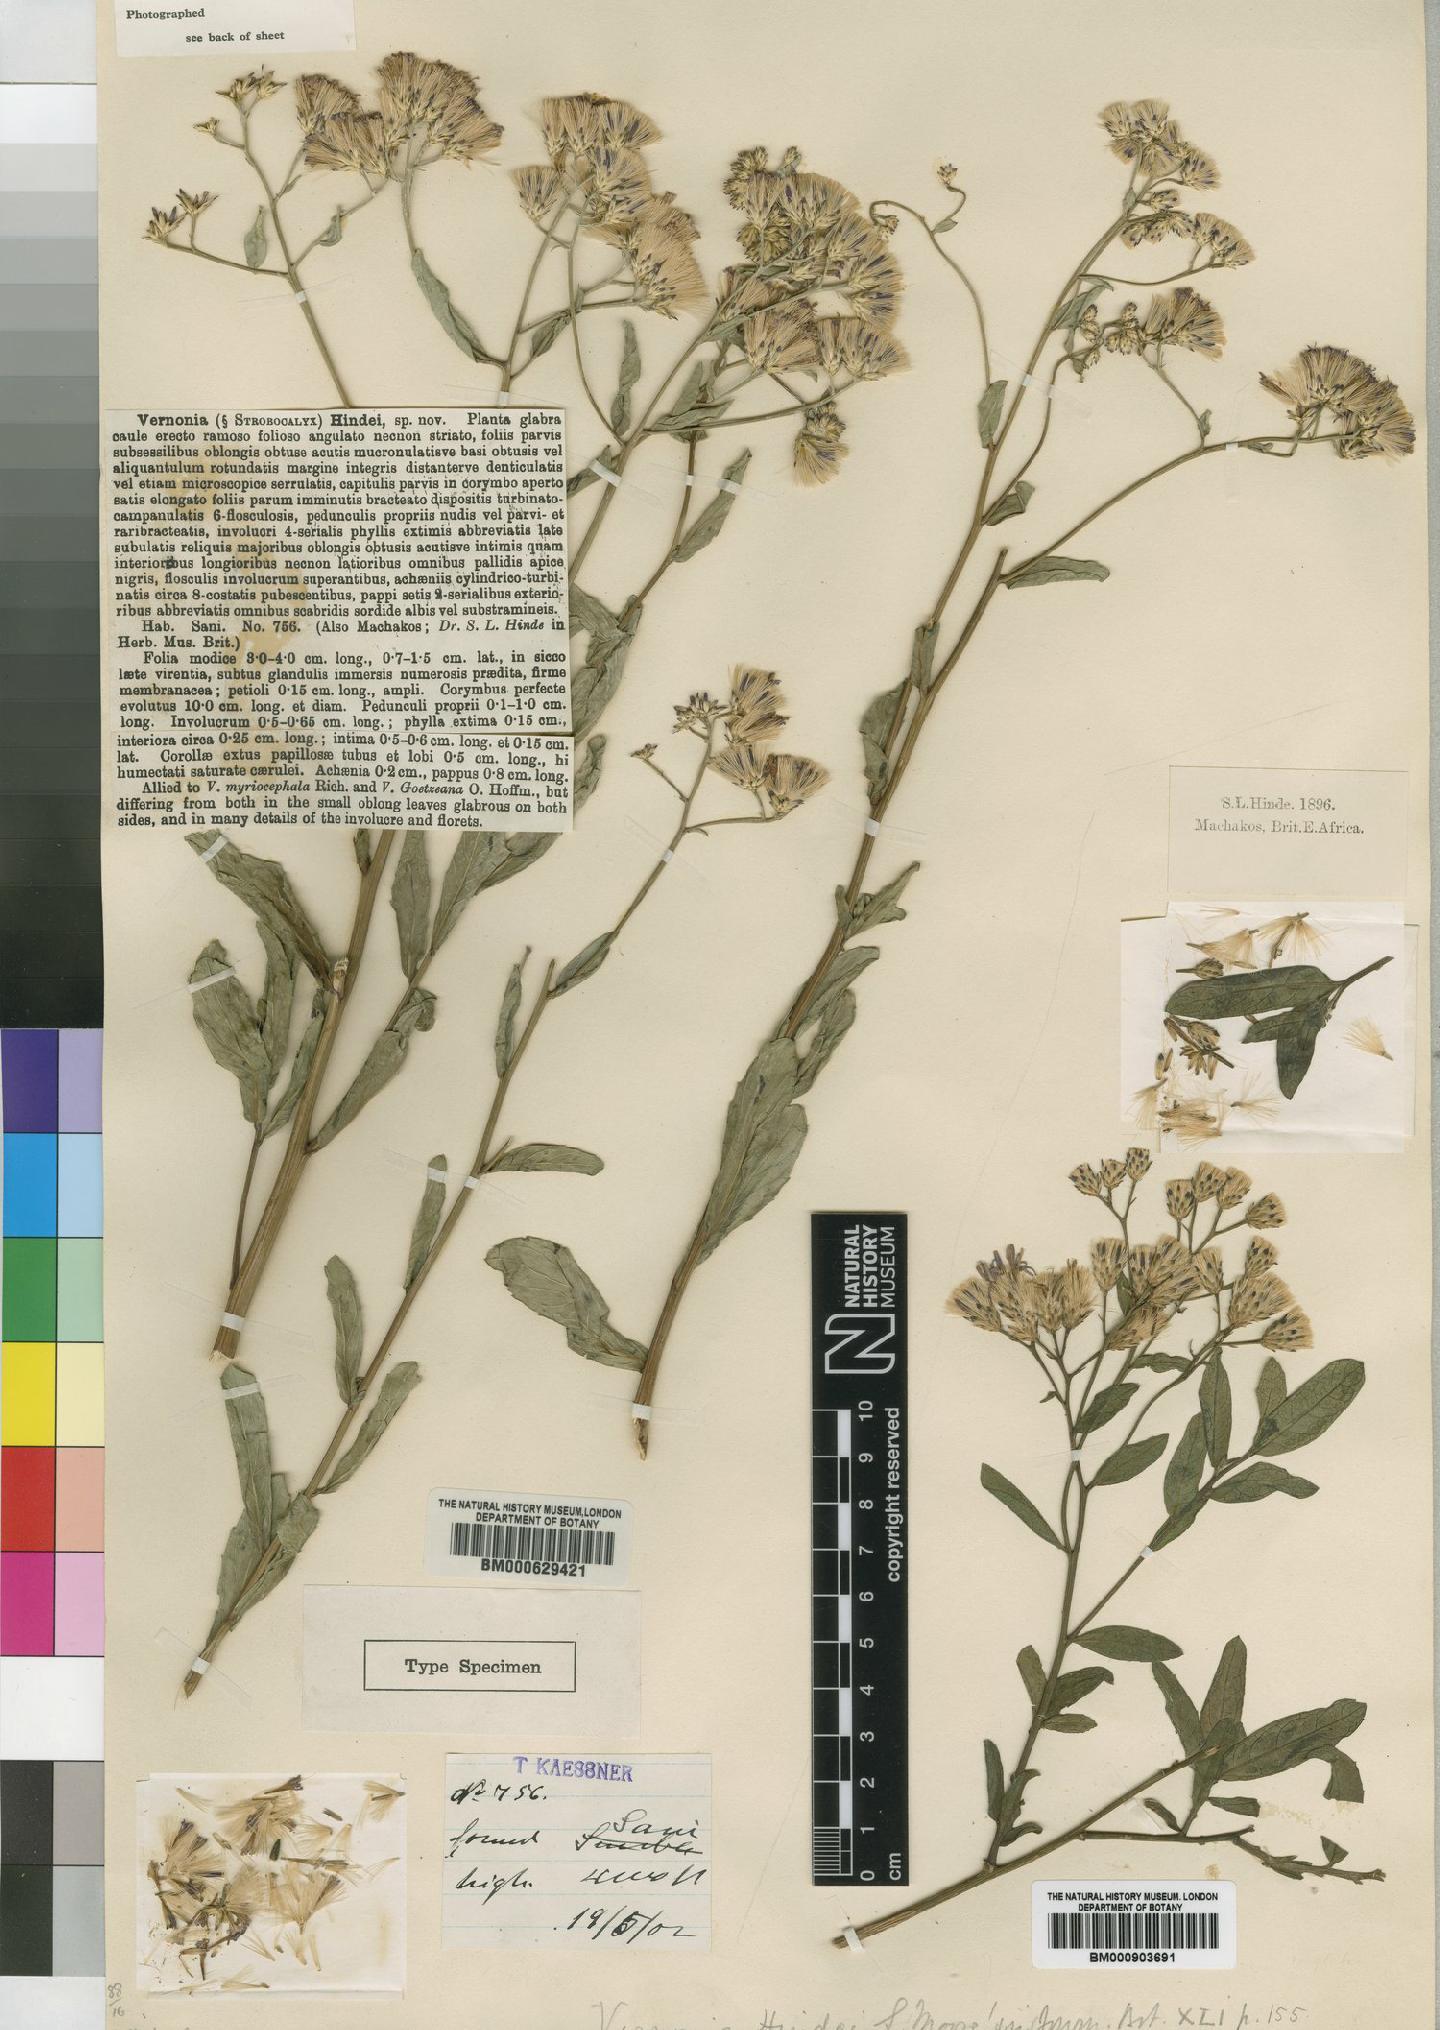 To NHMUK collection (Vernonia hindei Moore; Type; NHMUK:ecatalogue:4526378)